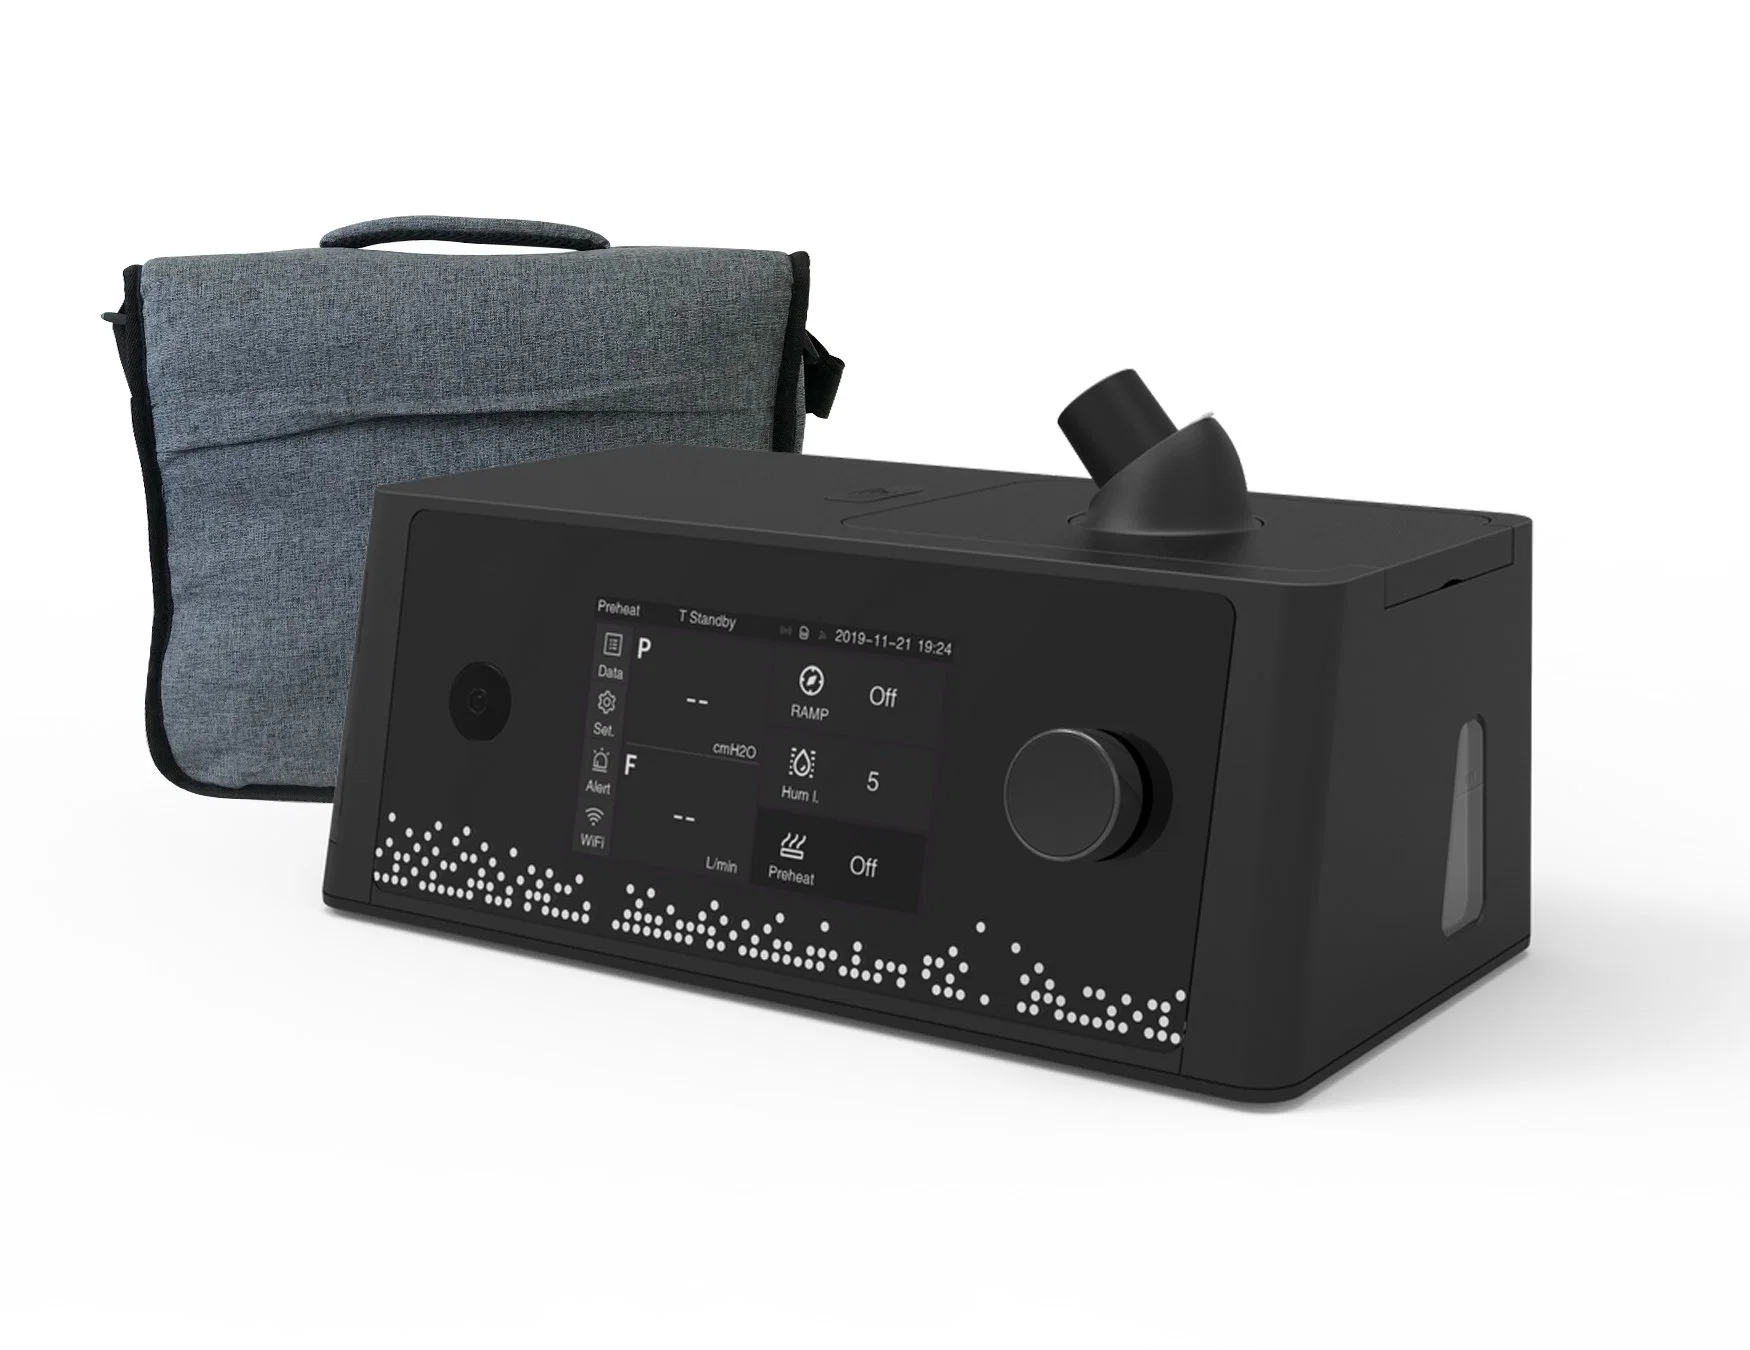 Aprobado por la FDA Konsung Medical Auto Portable CPAP Machine Ventilator para Tratamiento de apnea del sueño